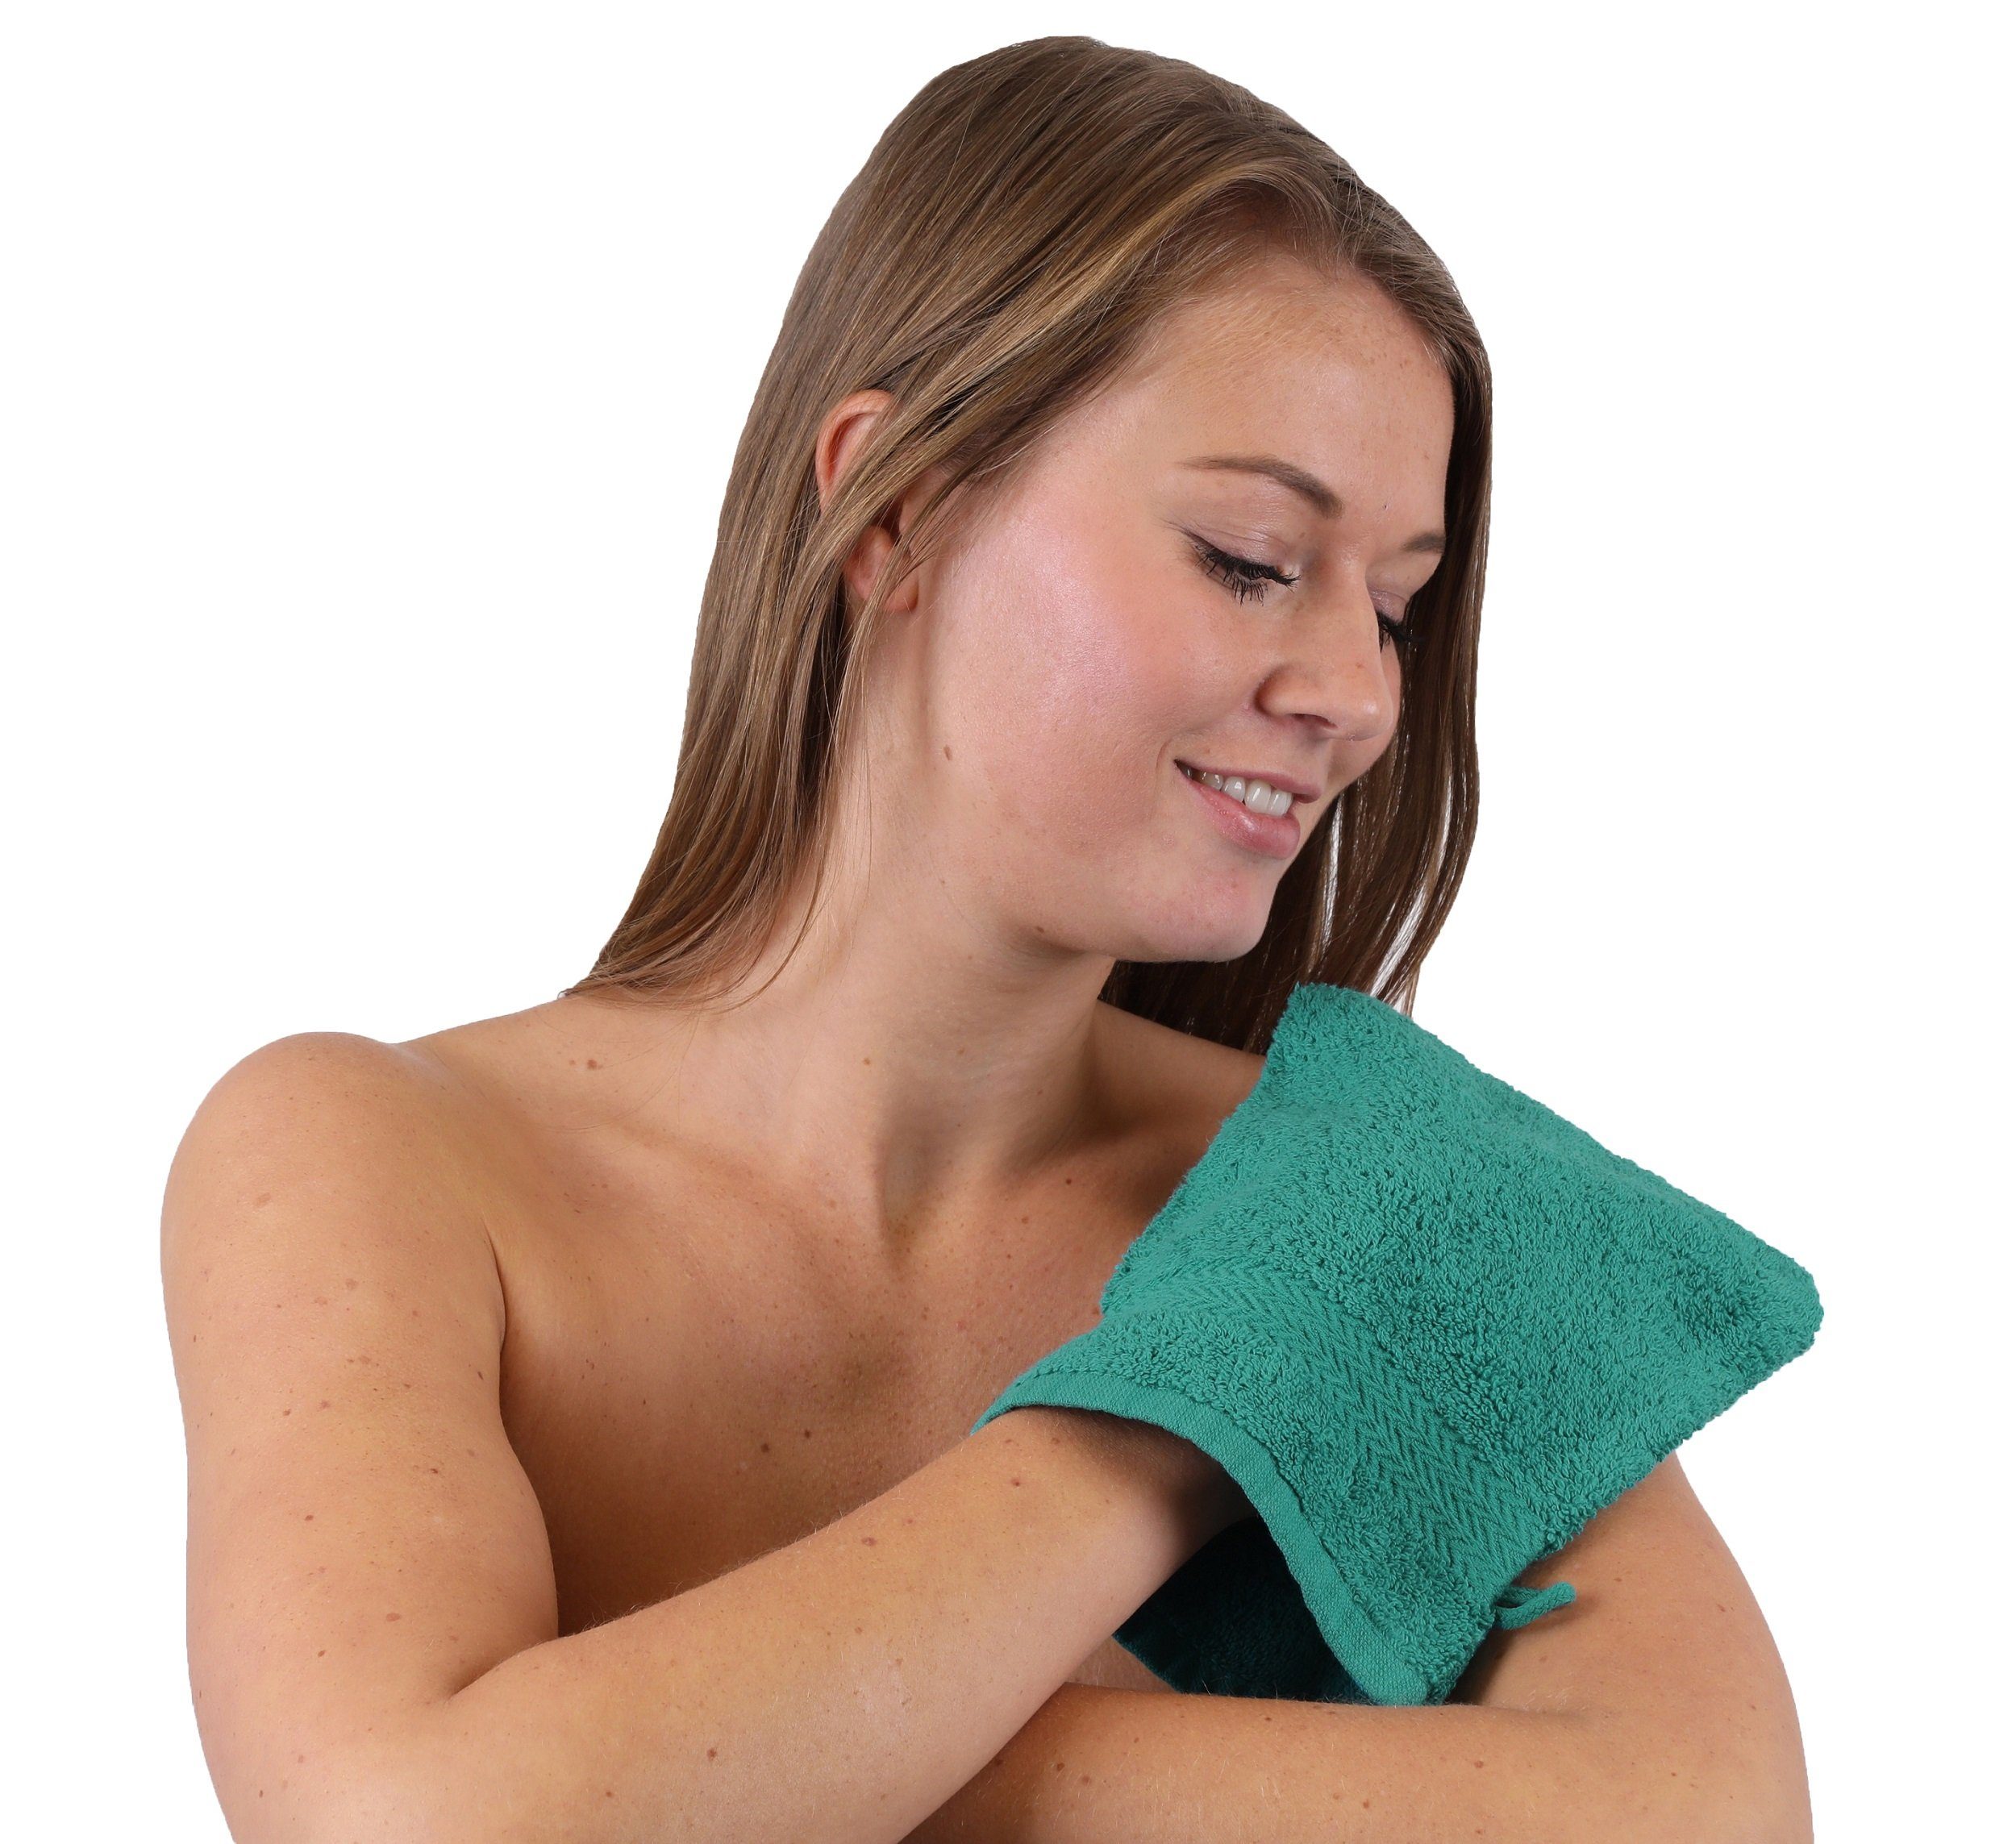 Betz Waschhandschuh 10 Stück Set und (10-tlg) Farbe Baumwolle Premium 100% weiß Waschhandschuhe Waschlappen smaragdgrün 16x21 cm